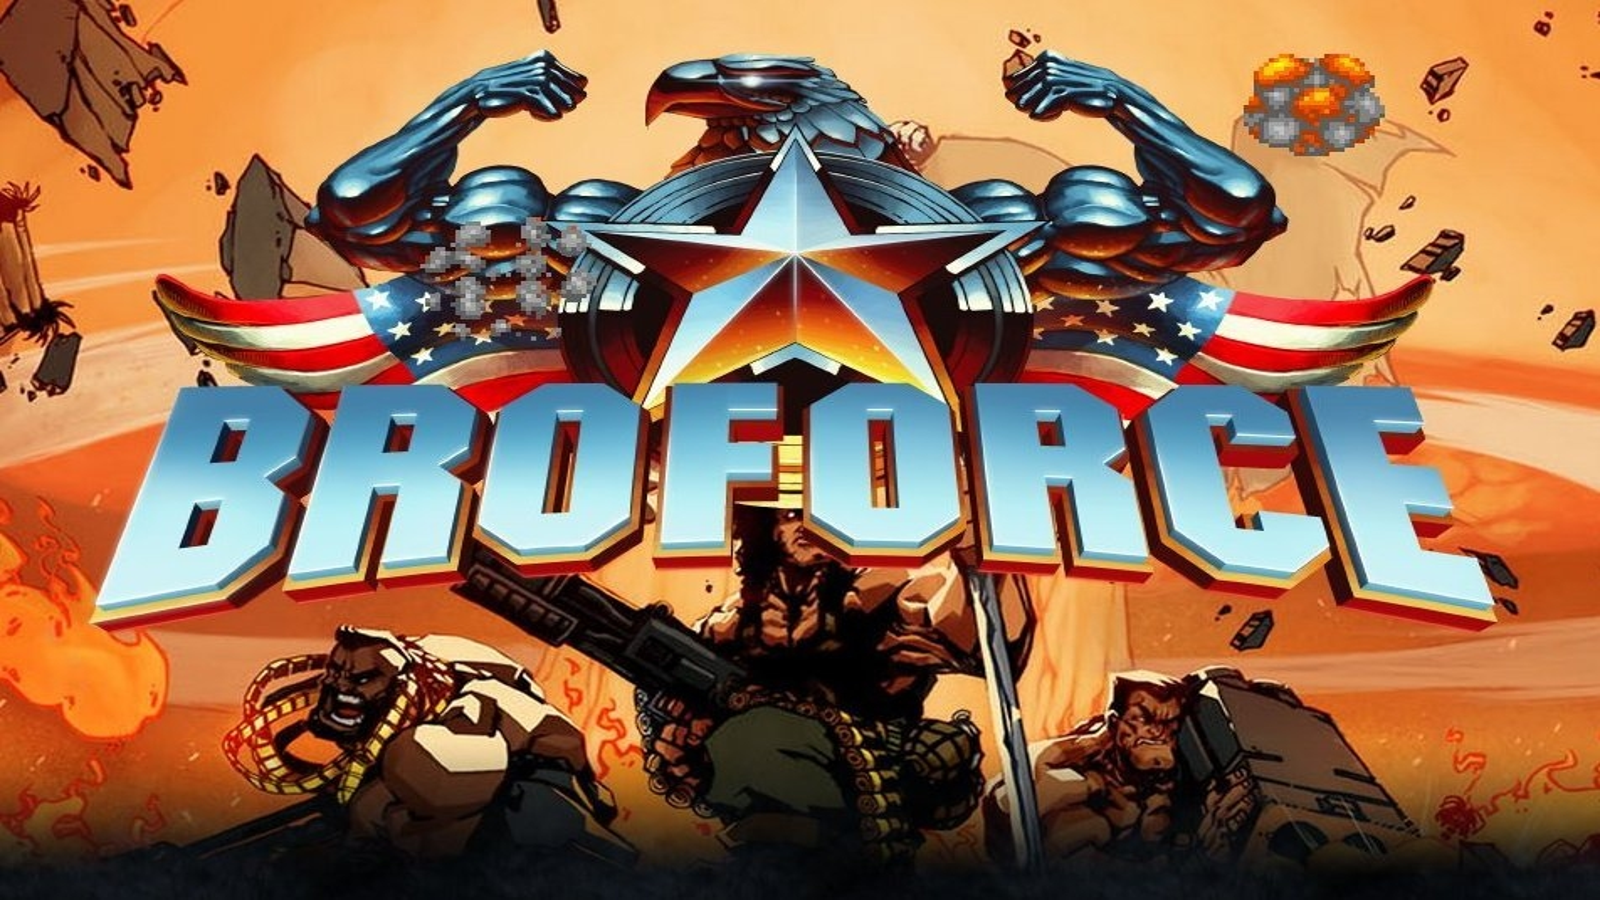 G1 - Game 'Broforce' ganha expansão inspirada no filme 'Os mercenários 3' -  notícias em Games